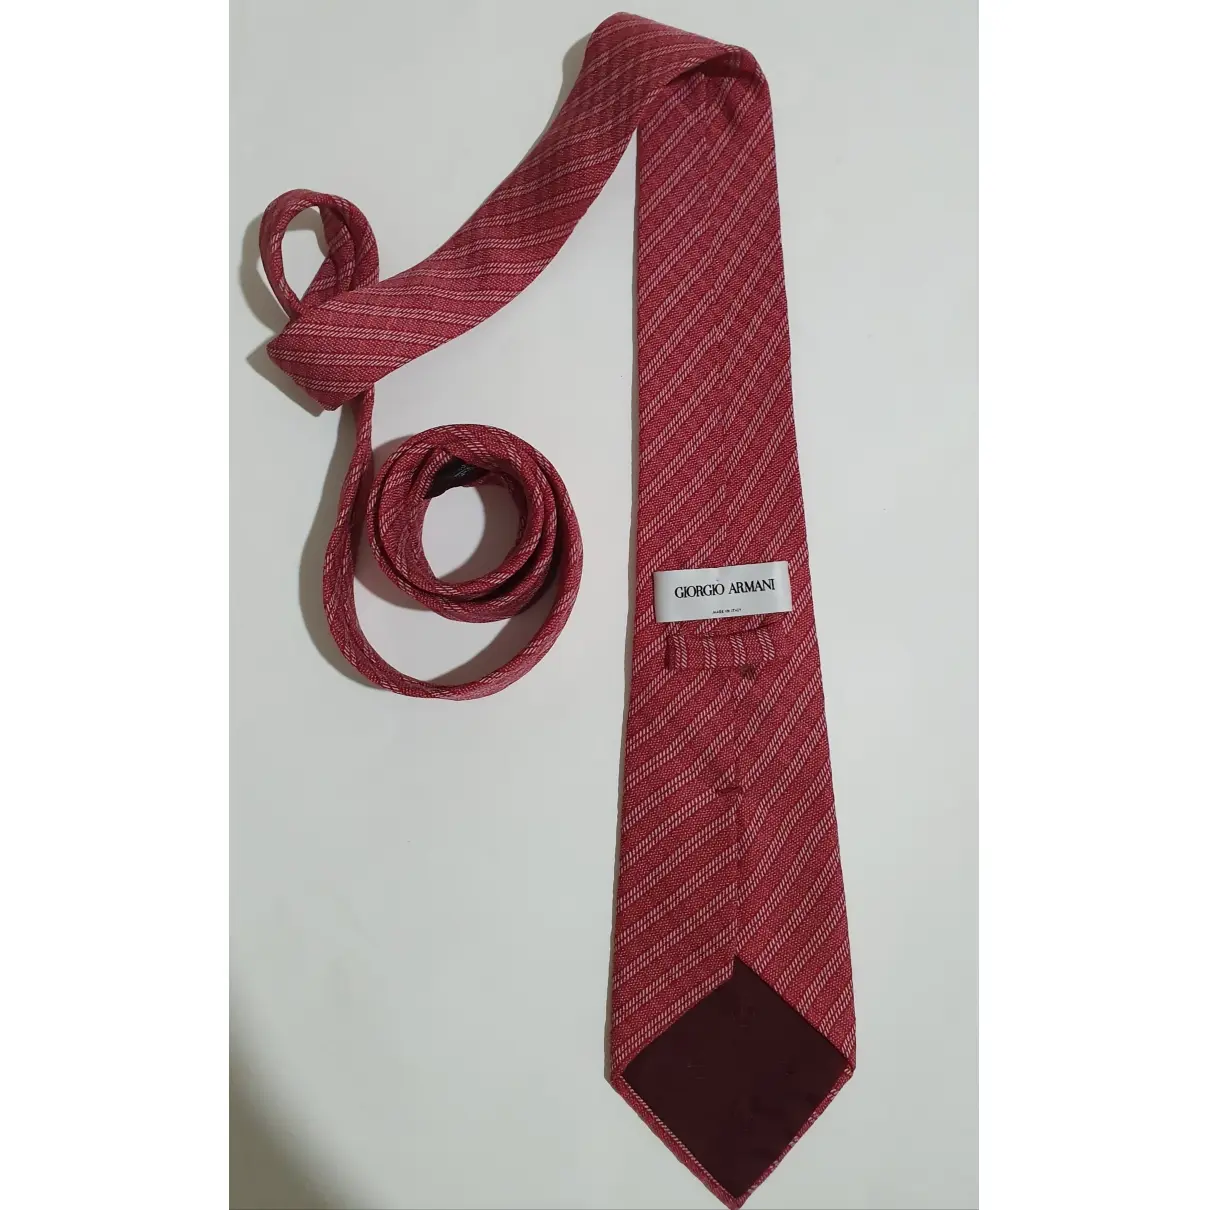 Giorgio Armani Silk tie for sale